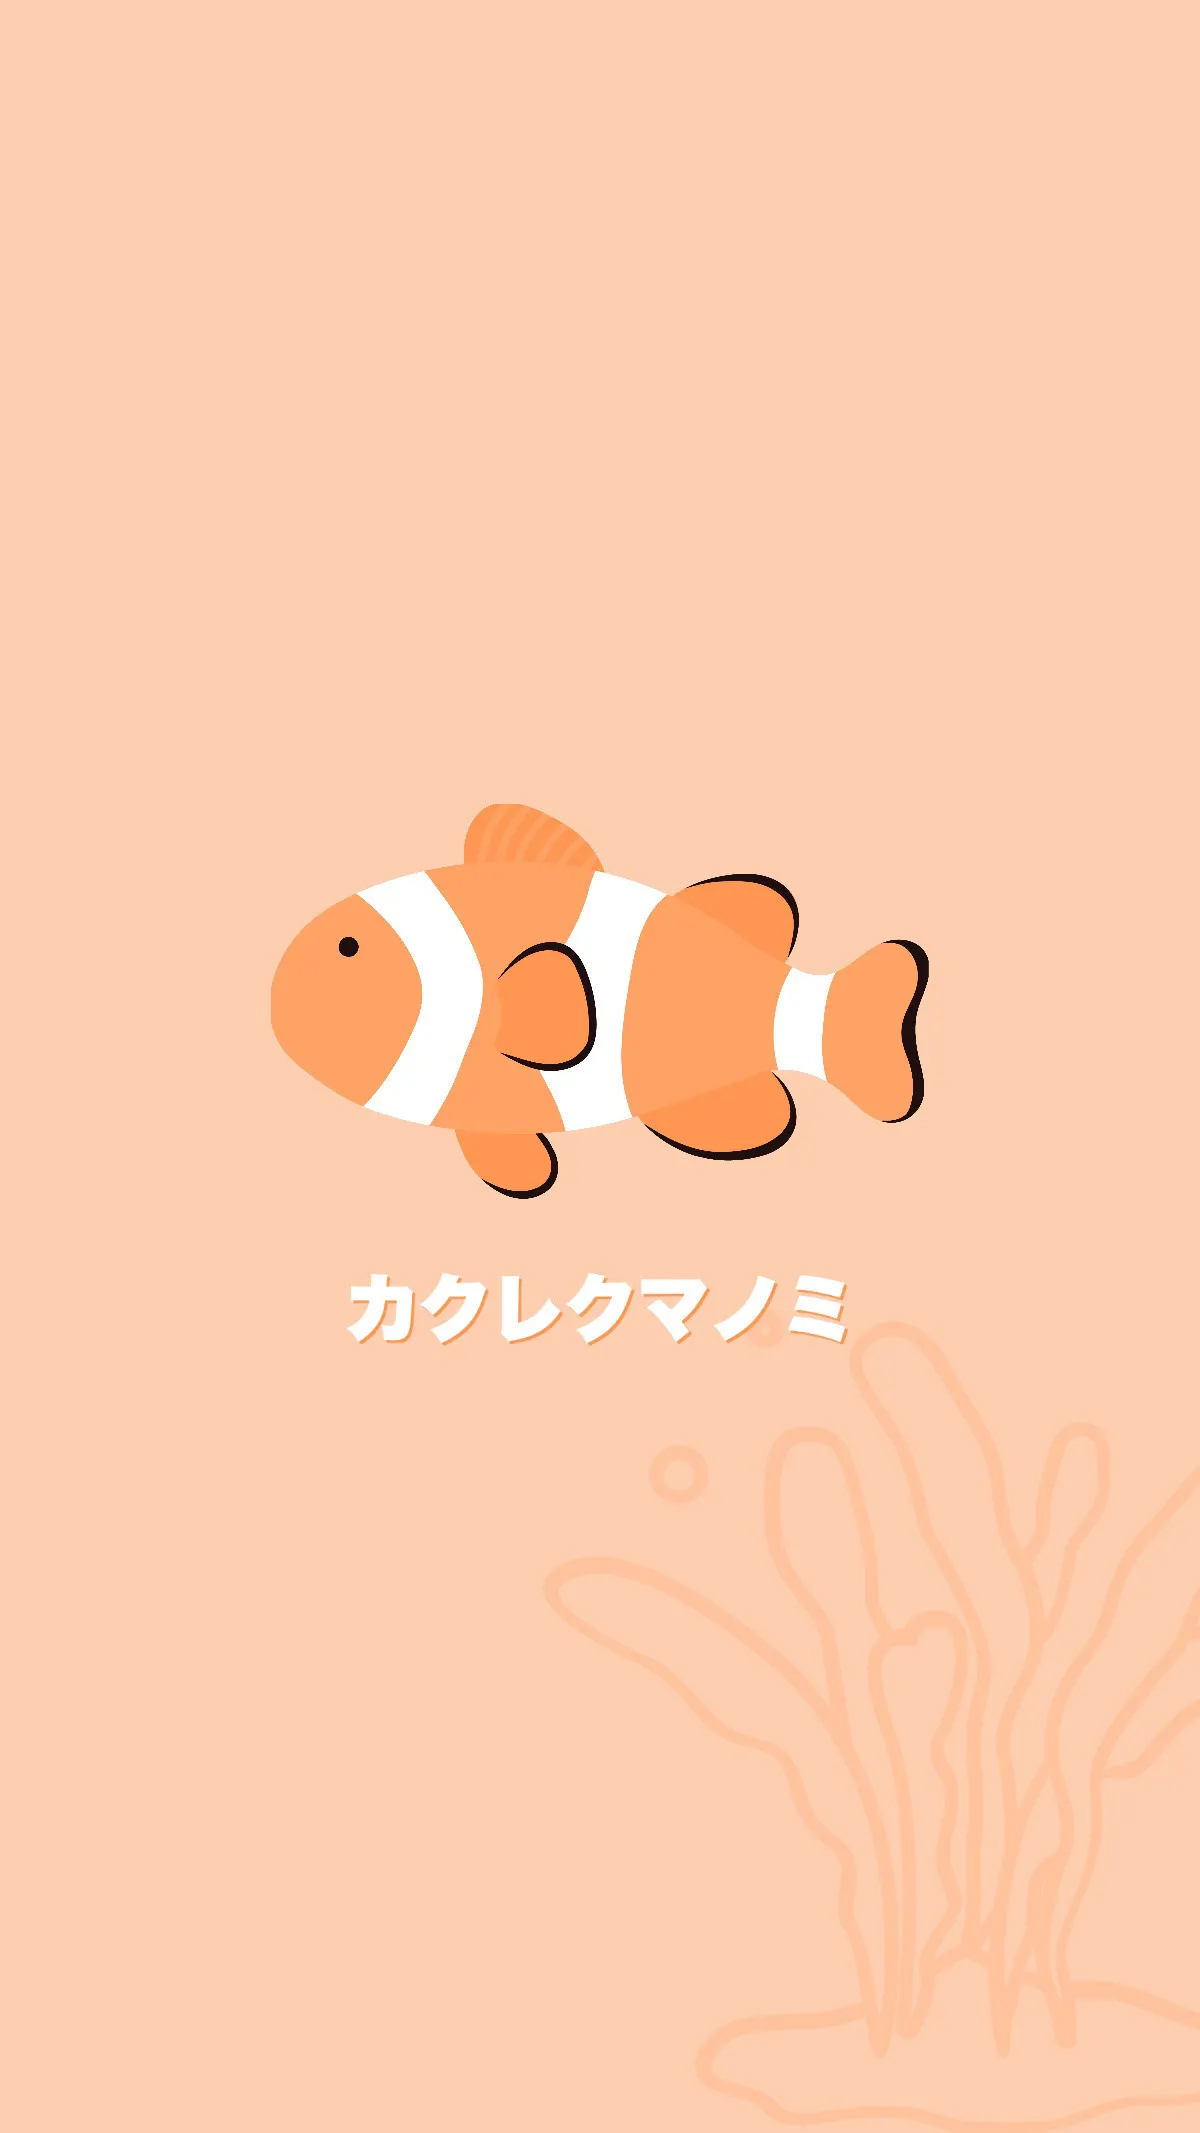 Cute small orange white fish